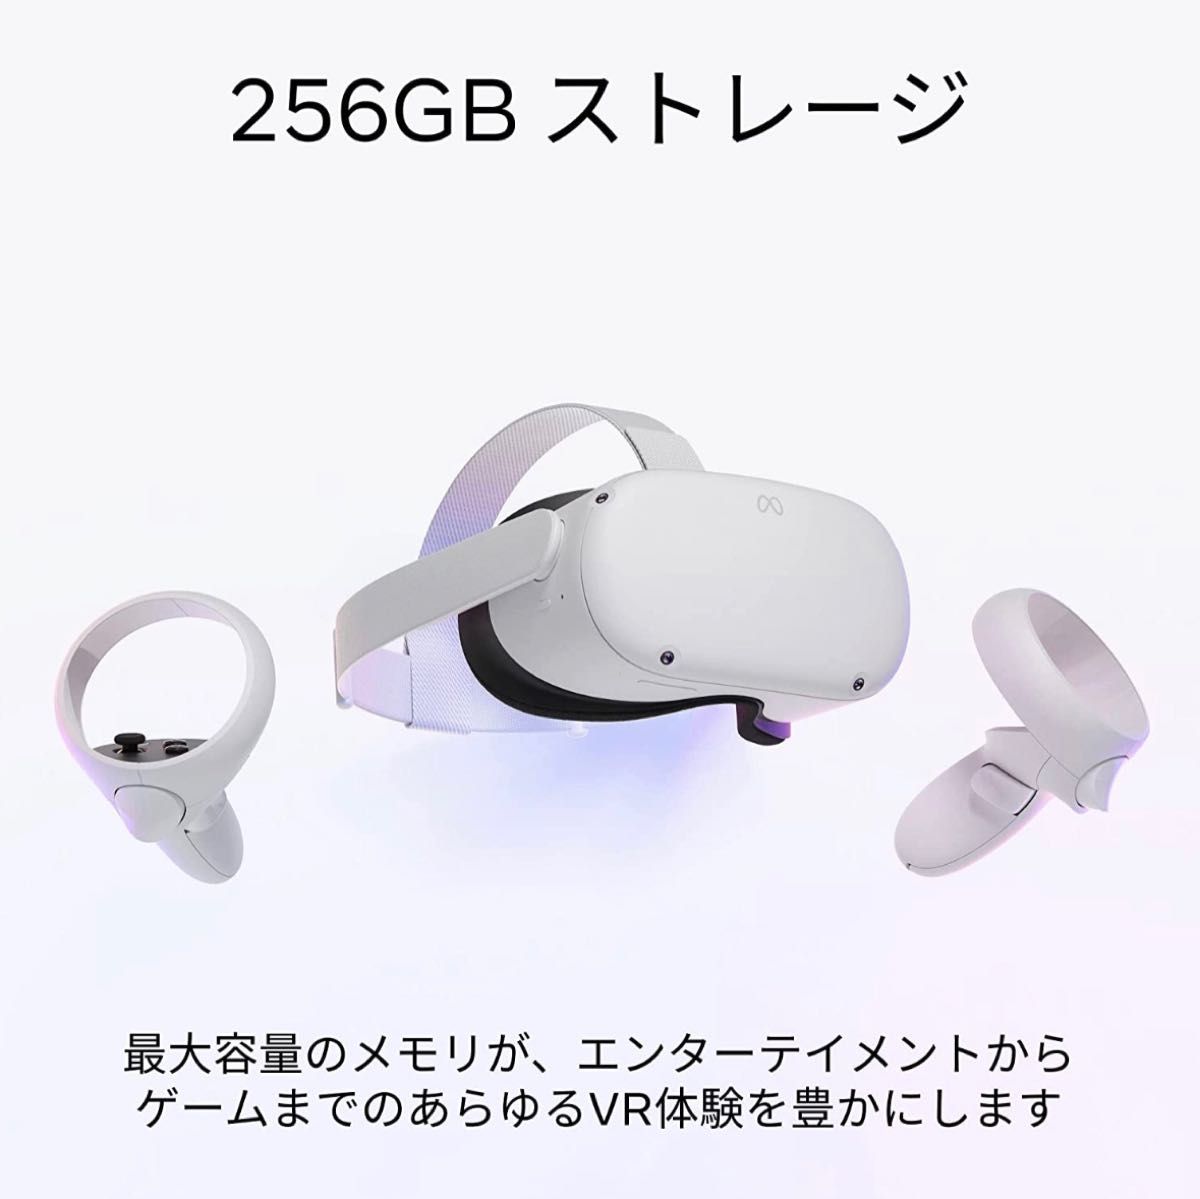 【256GB】Meta Quest 2 メタクエスト2 ワイヤレス オールインワン VR ヘッドセット ゲーム